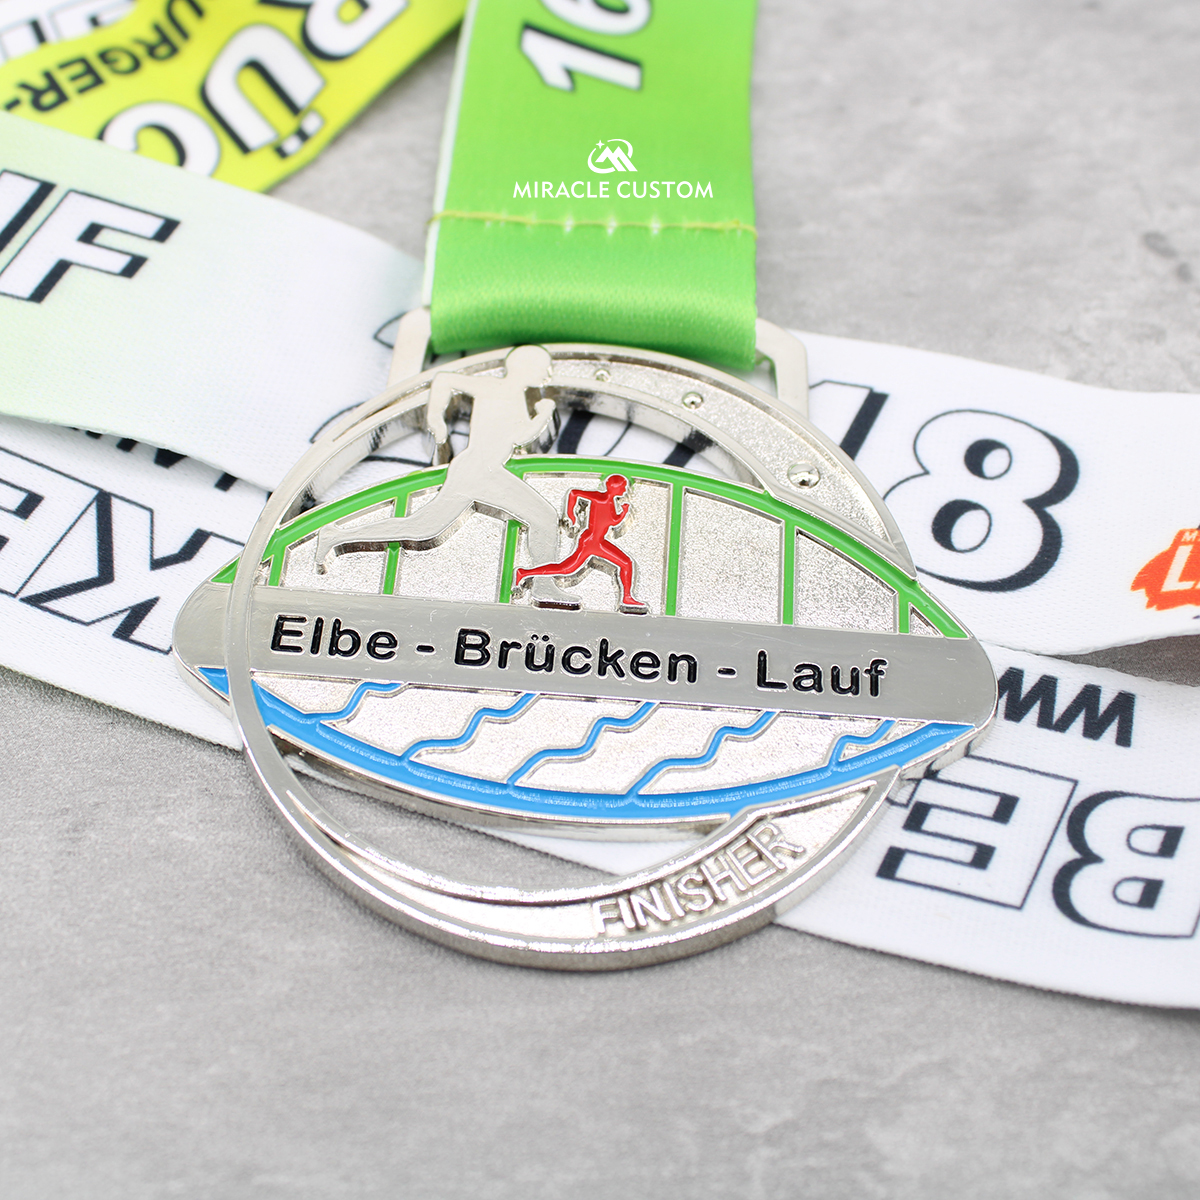 Custom Elbe Brücken Lauf 2018 Finisher Medals